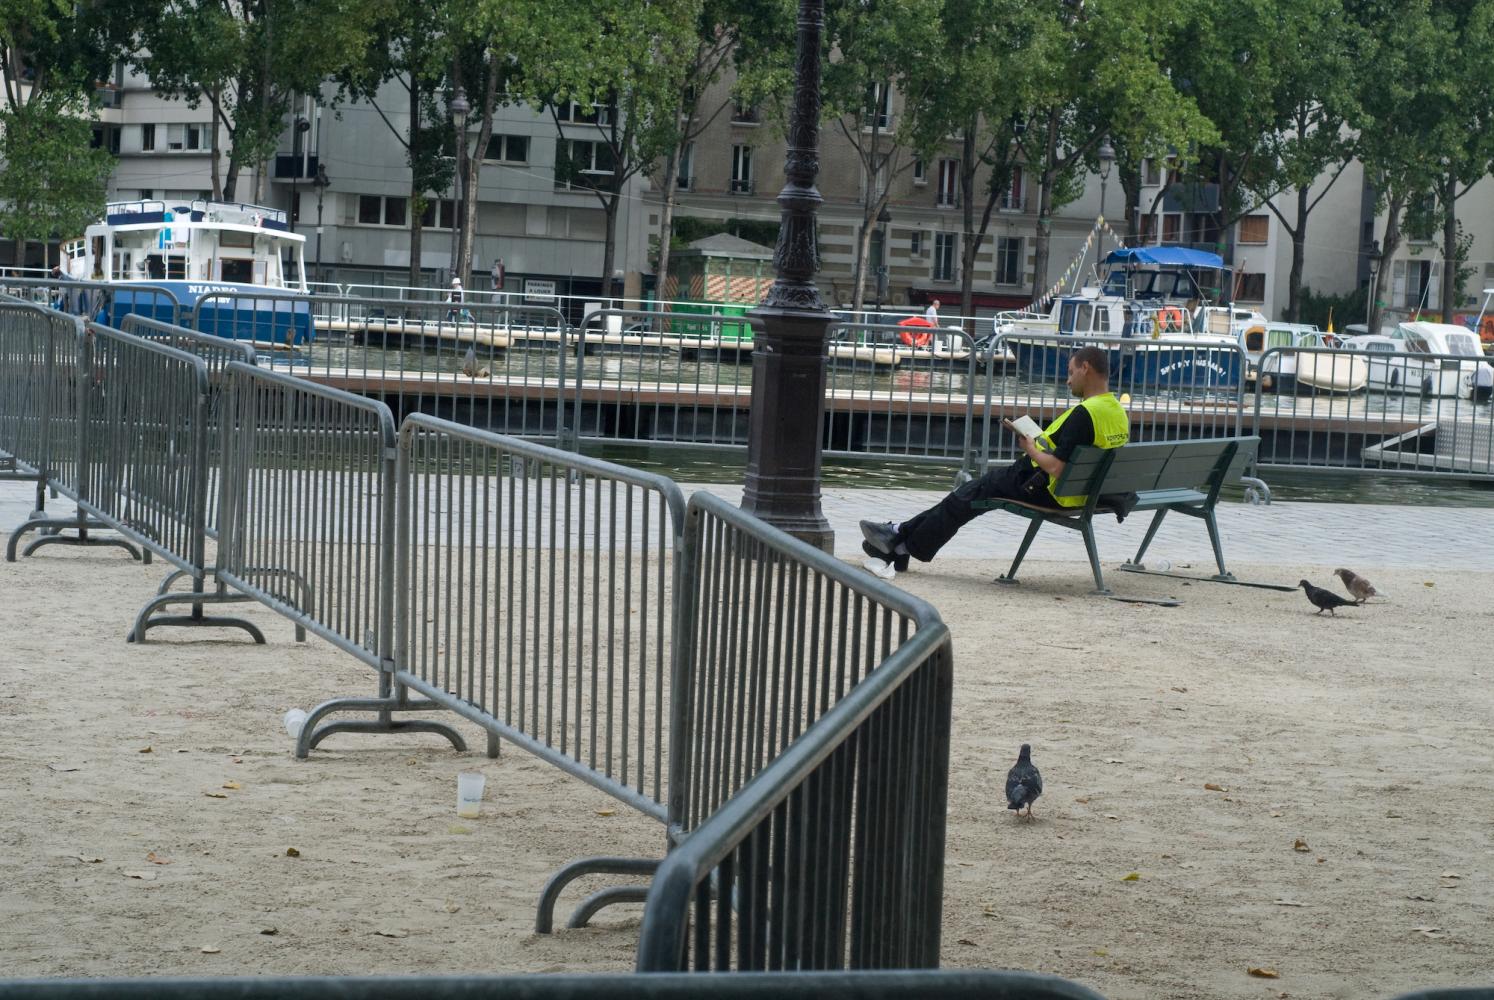 Assis sur un banc, cerné par des barrières métalliques, un homme en gilet jaune lit un livre parmi les pigeons. Paris, août 2010.